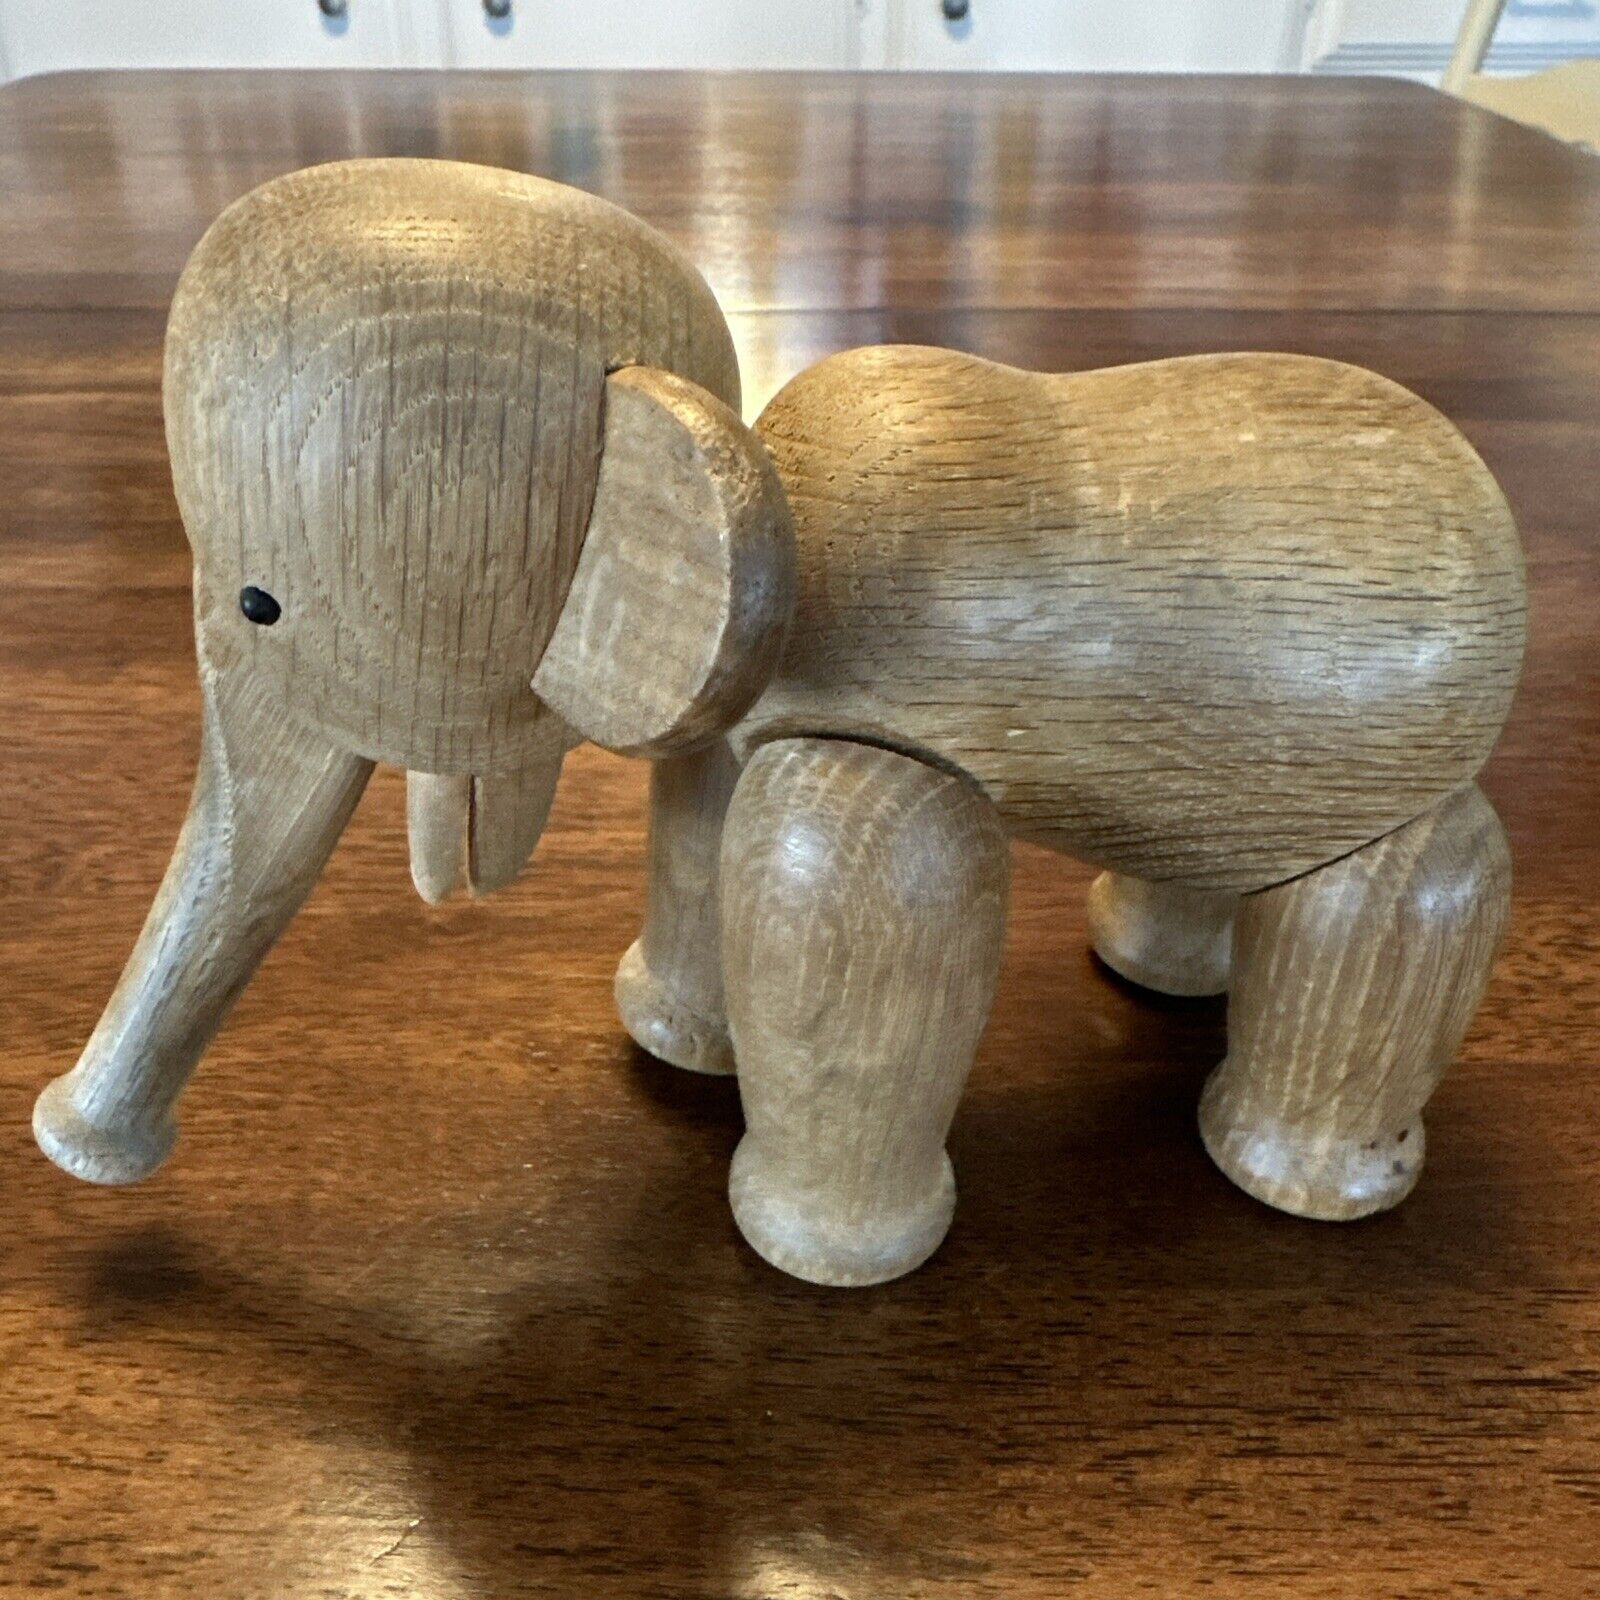 Vintage Original Kay Bojesen Articulated Wooden Teak Elephant. 1963 Excellent